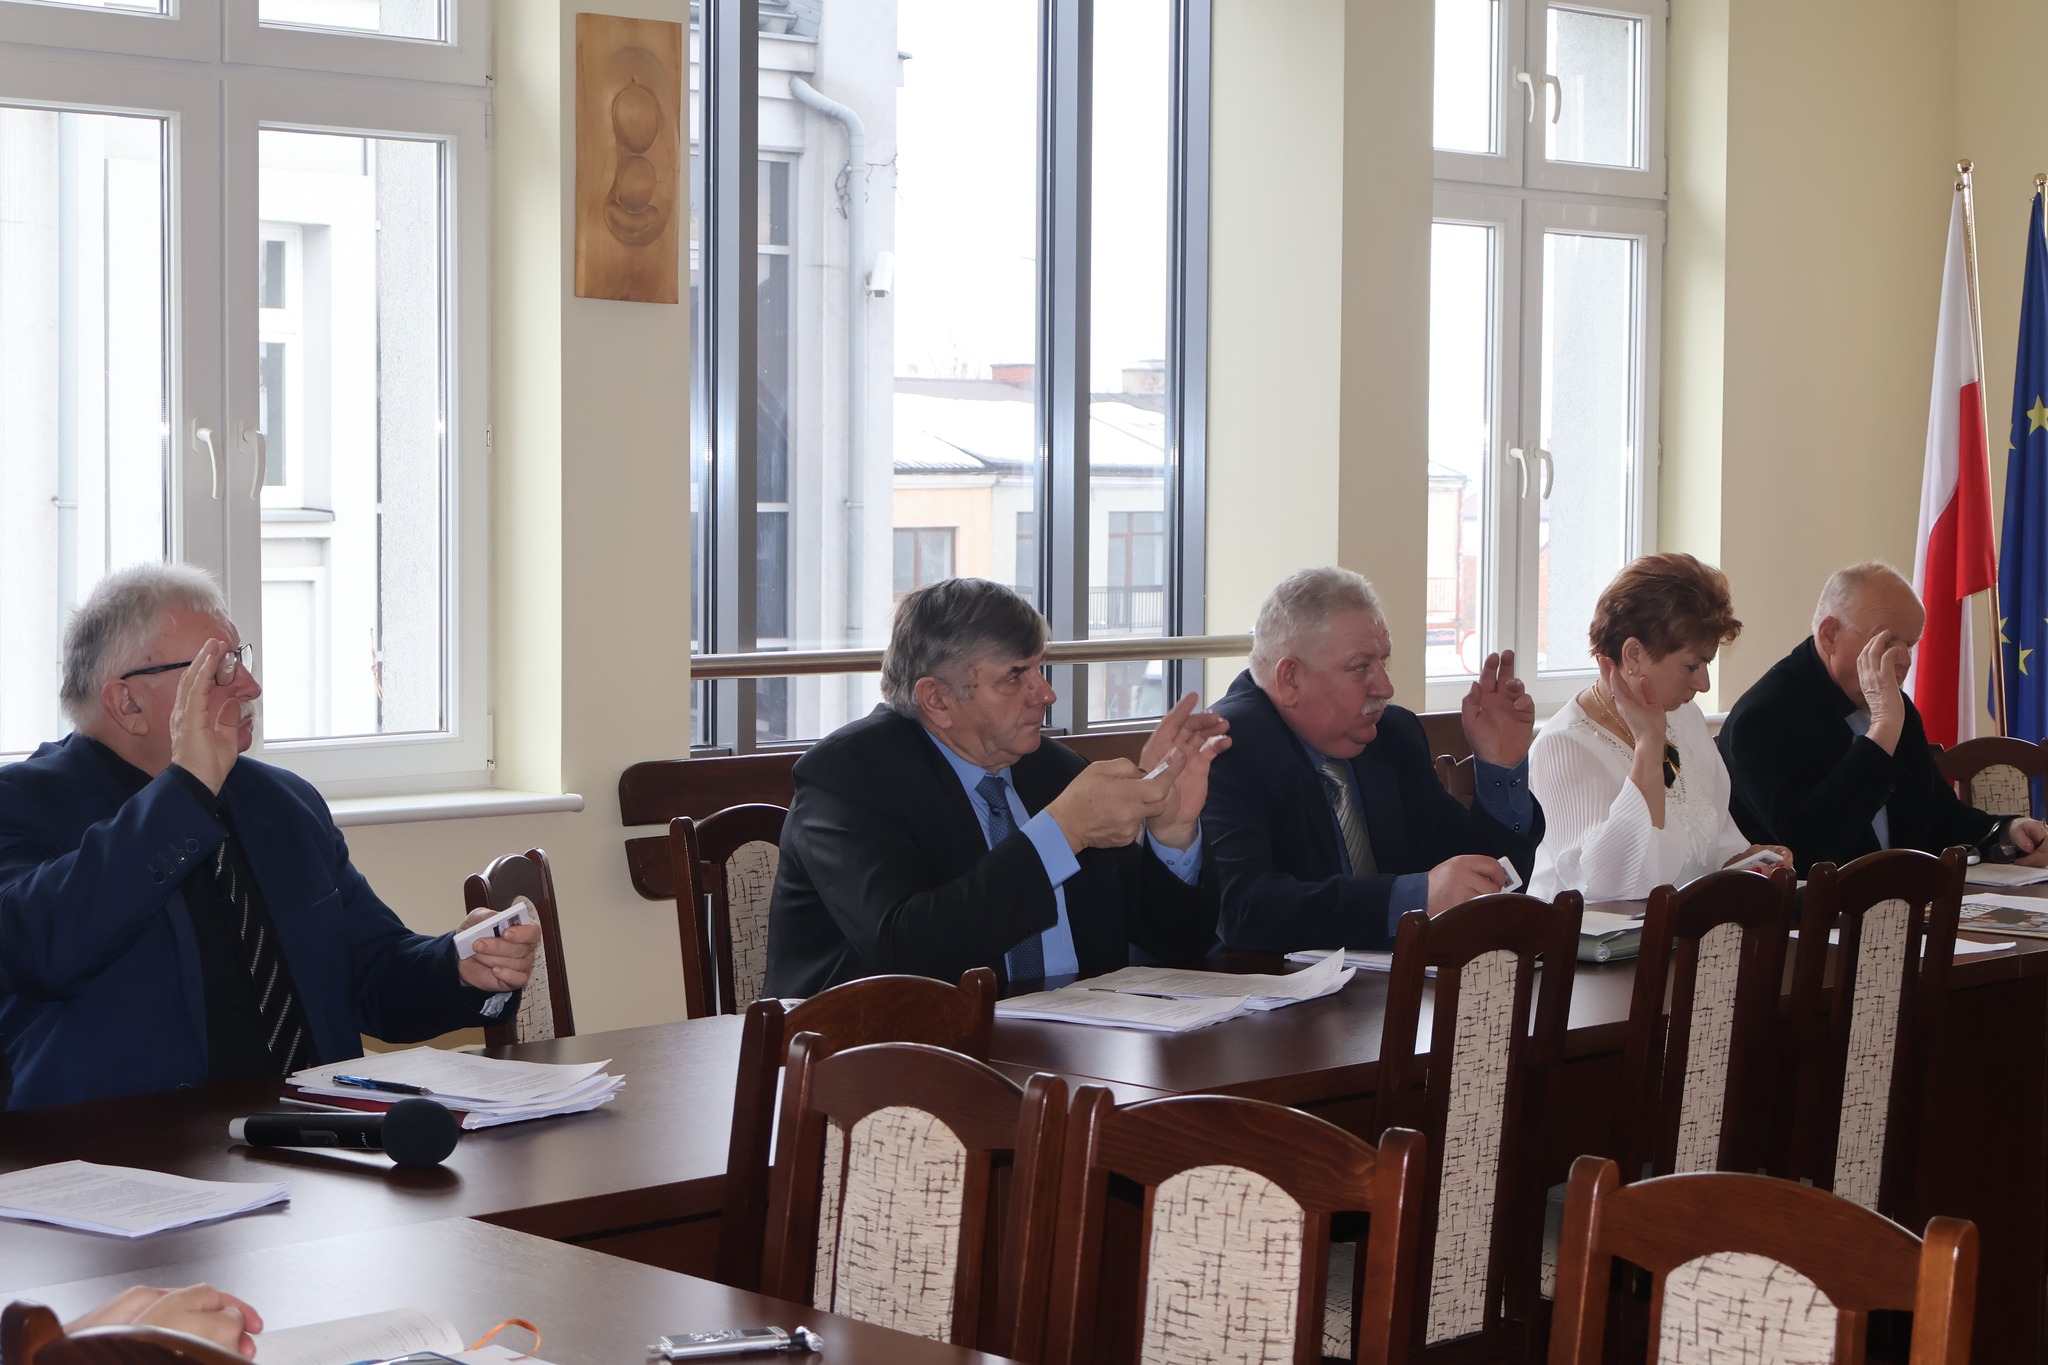 Na zdjęciu grupa radnych siedzących przy stole i głosujących za projektem 